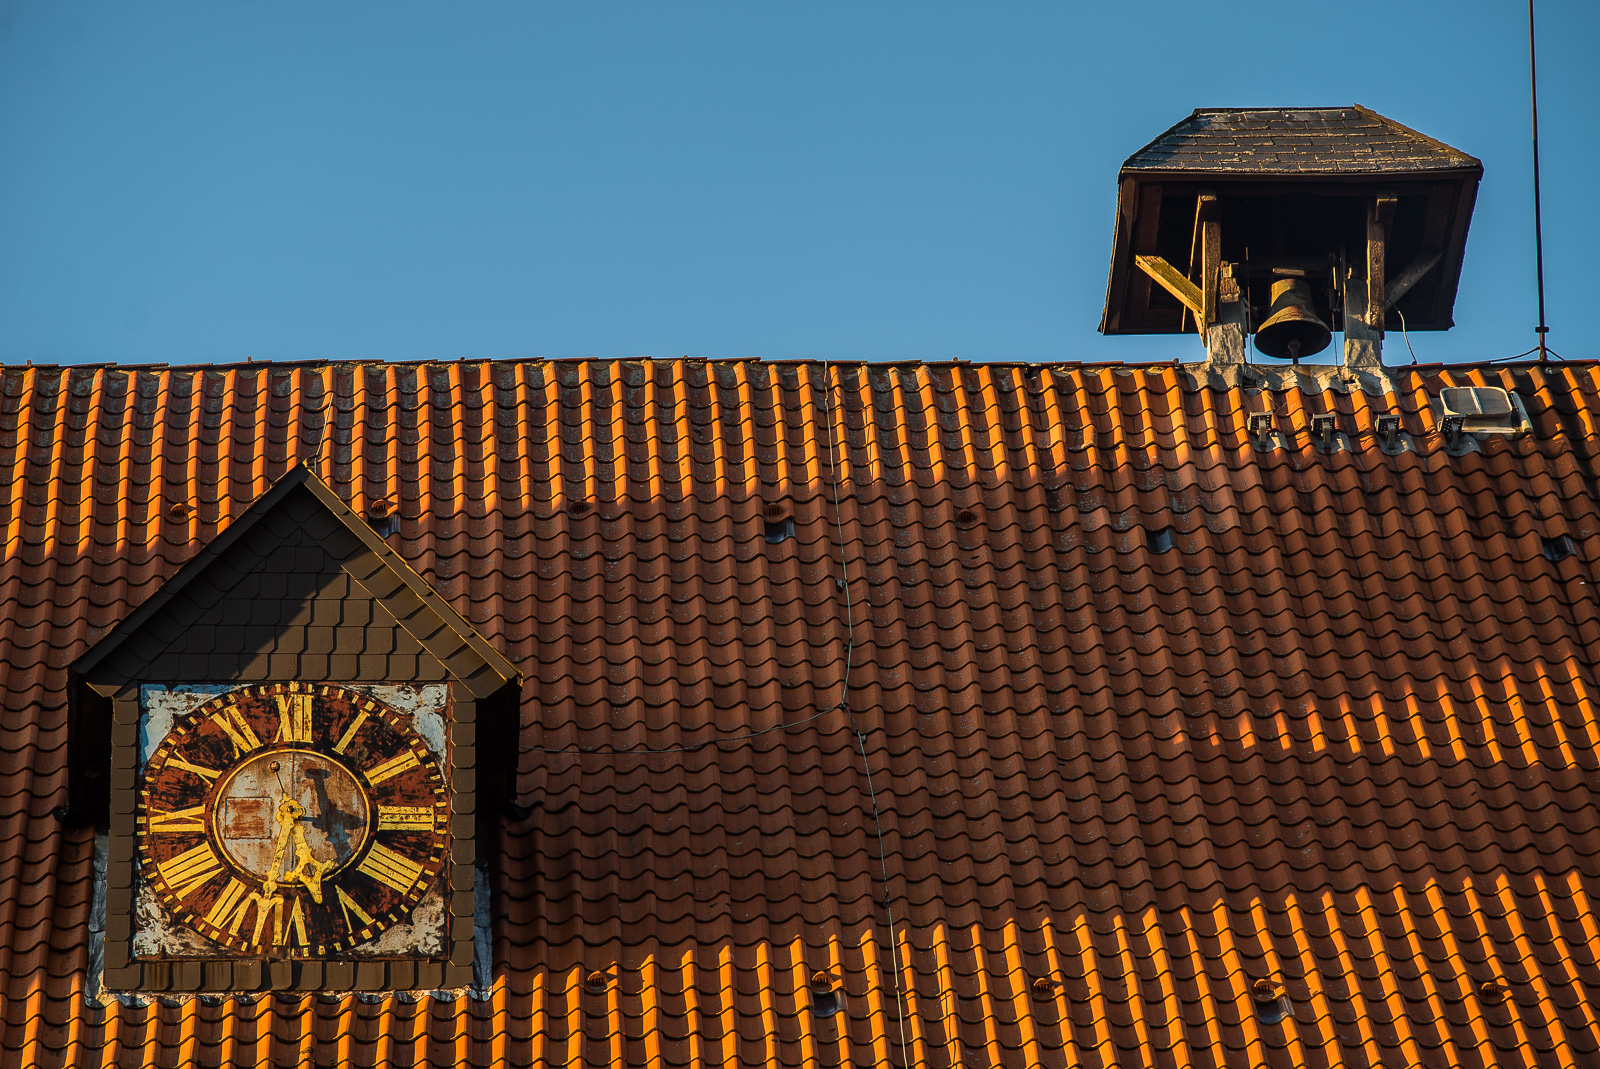 Backstein-Dom von Bardowick: Dach-Ausschnitt mit Uhr (kurz nach halb sechs) und einzelner Glocke oben auf dem First